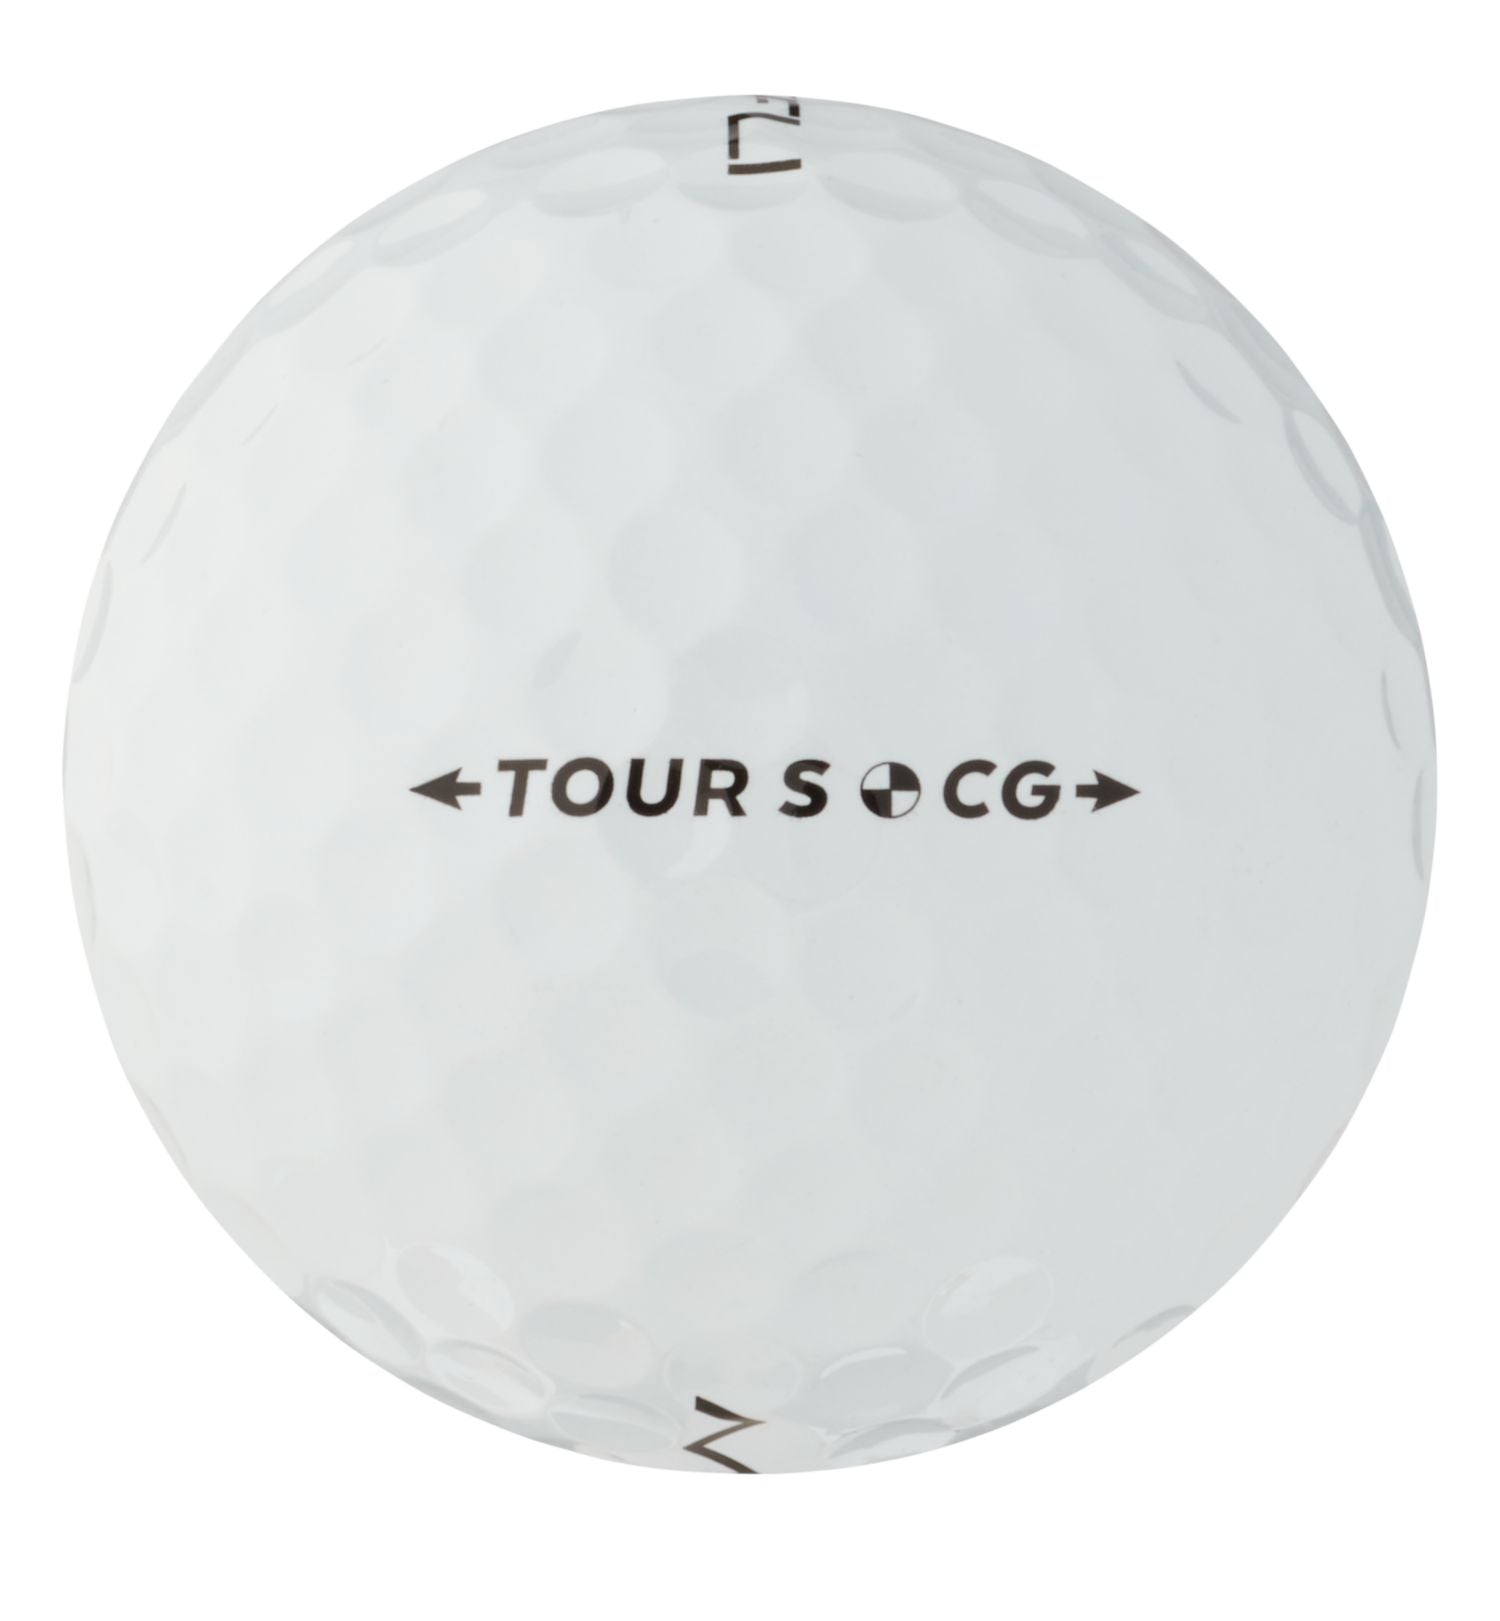 Maxfli 2023 Tour S Golf Balls-12 Pack White (1)